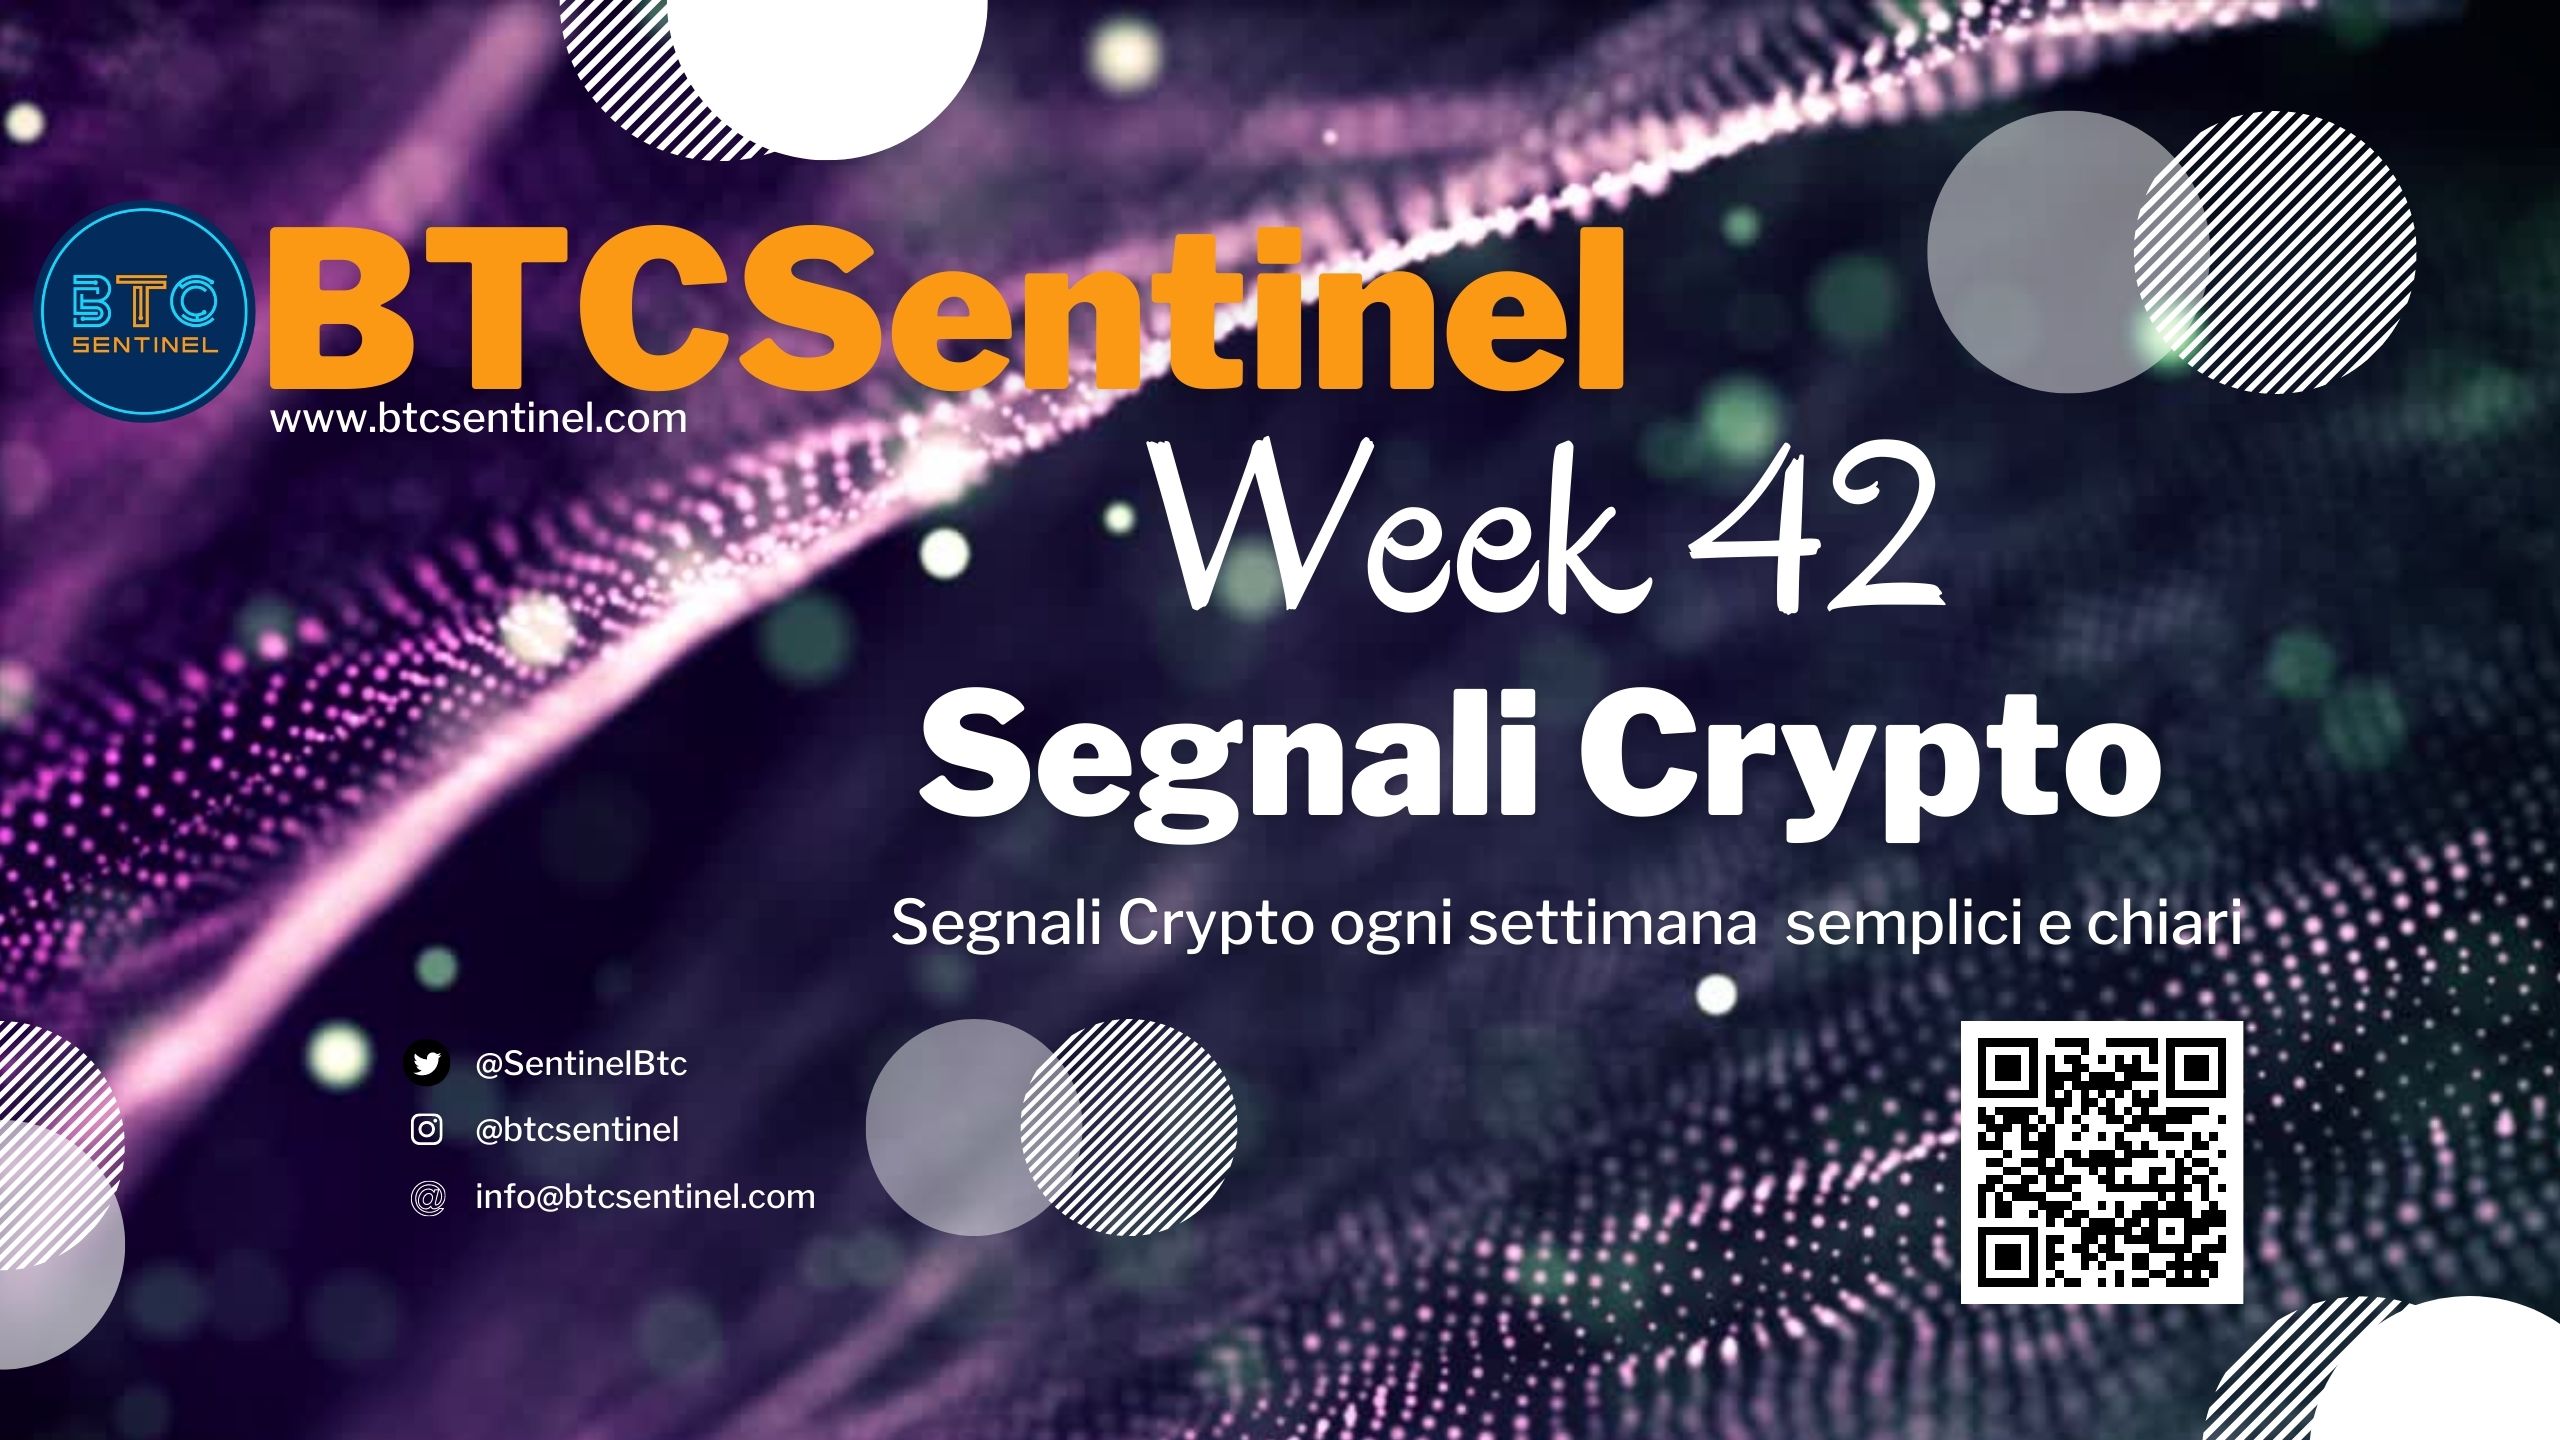 Segnali Crypto Week 42: news dal mondo crypto analizzate per capire il mercato